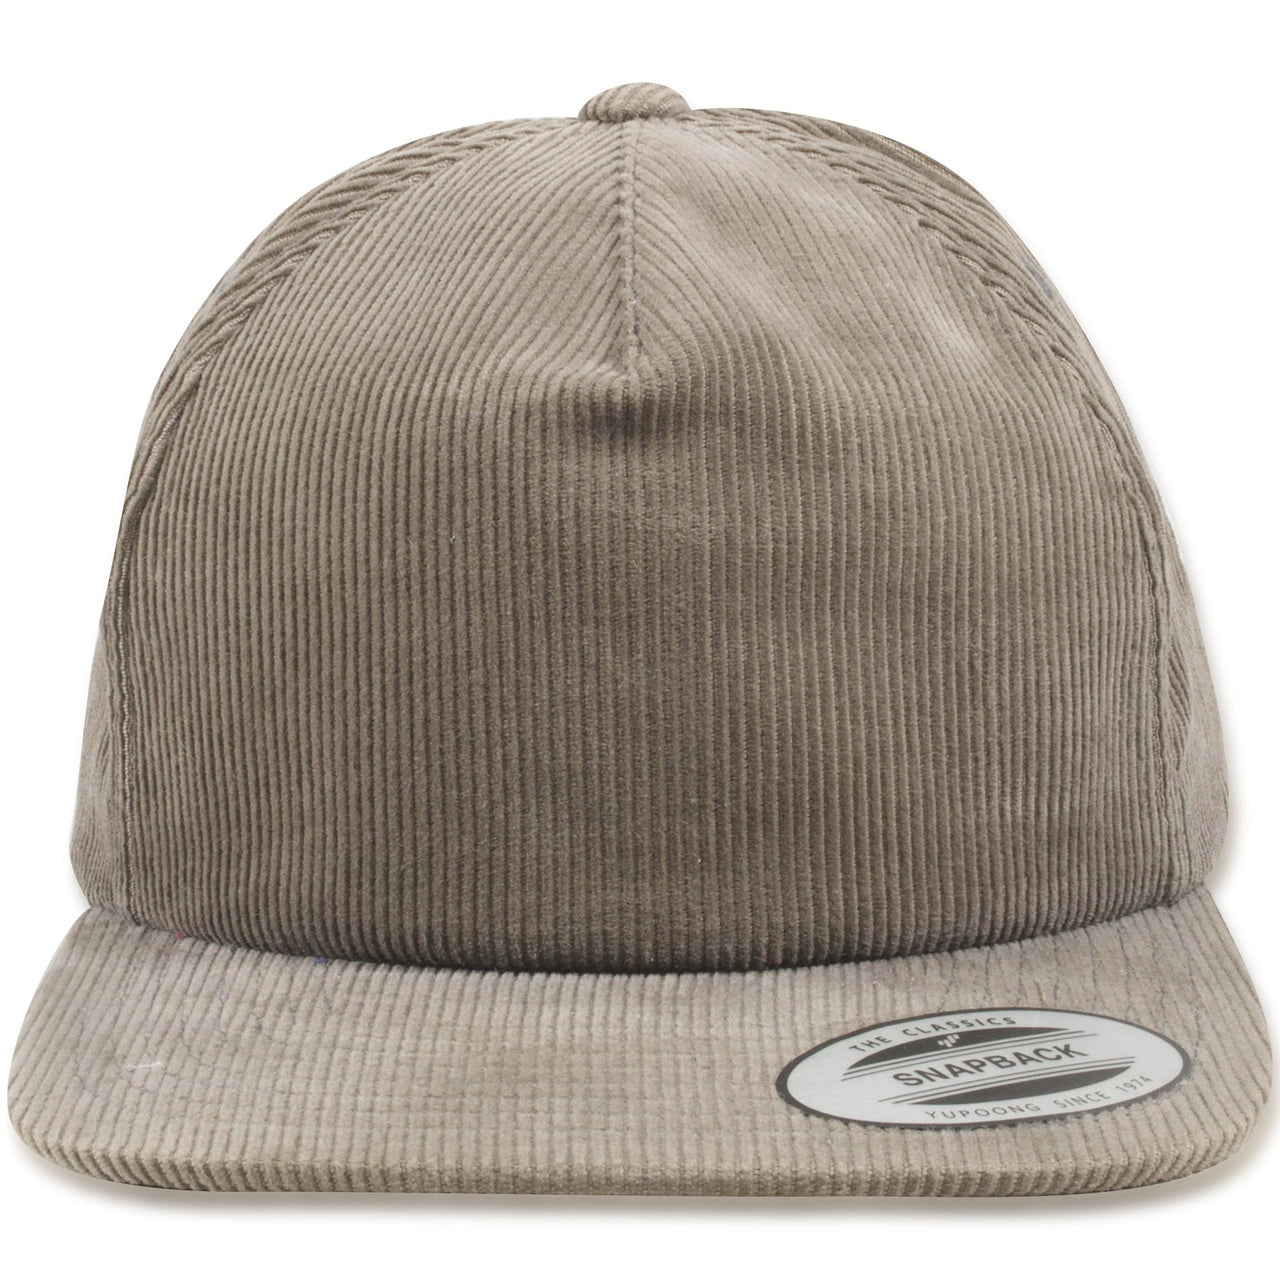 Blank Gray Corduroy Adjustable Snapback Hat